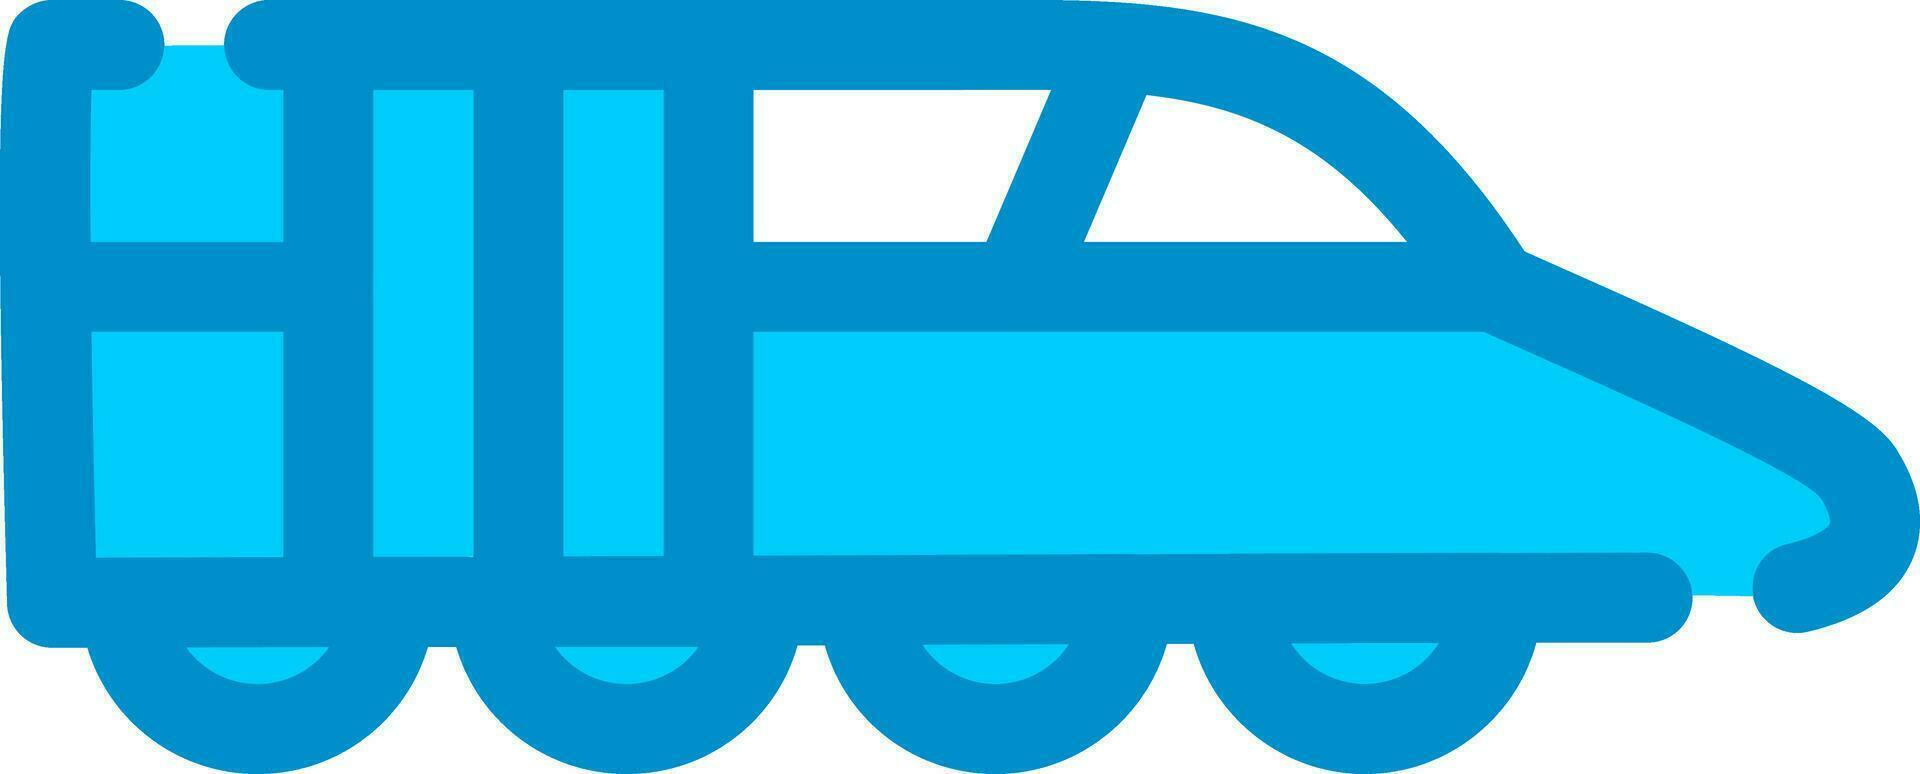 Train Creative Icon Design vector